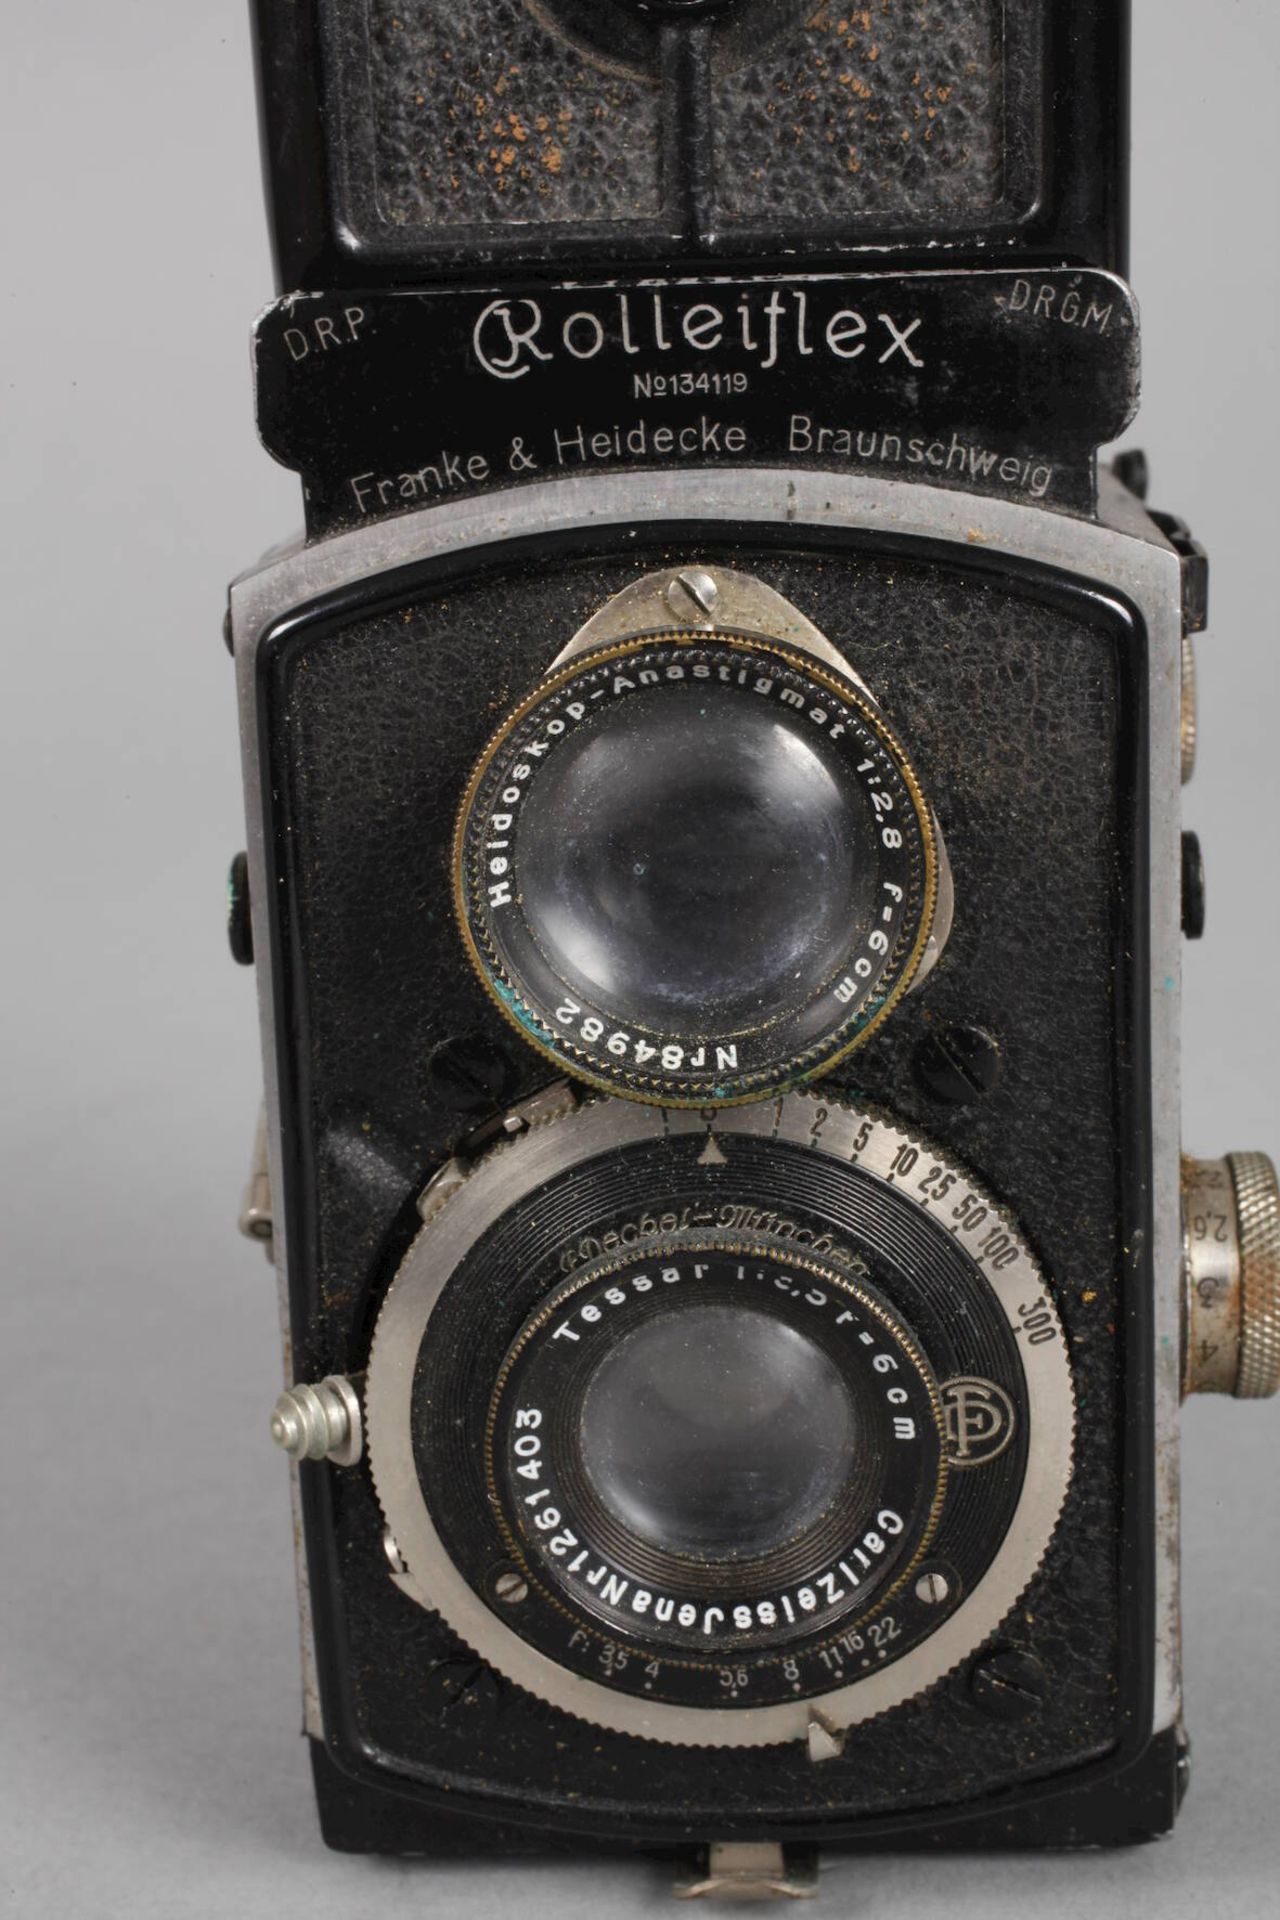 Kleinbildkamera Rolleiflex1930er Jahre, gemarkt Franke & Heidecke Braunschweig und nummeriert - Image 2 of 3